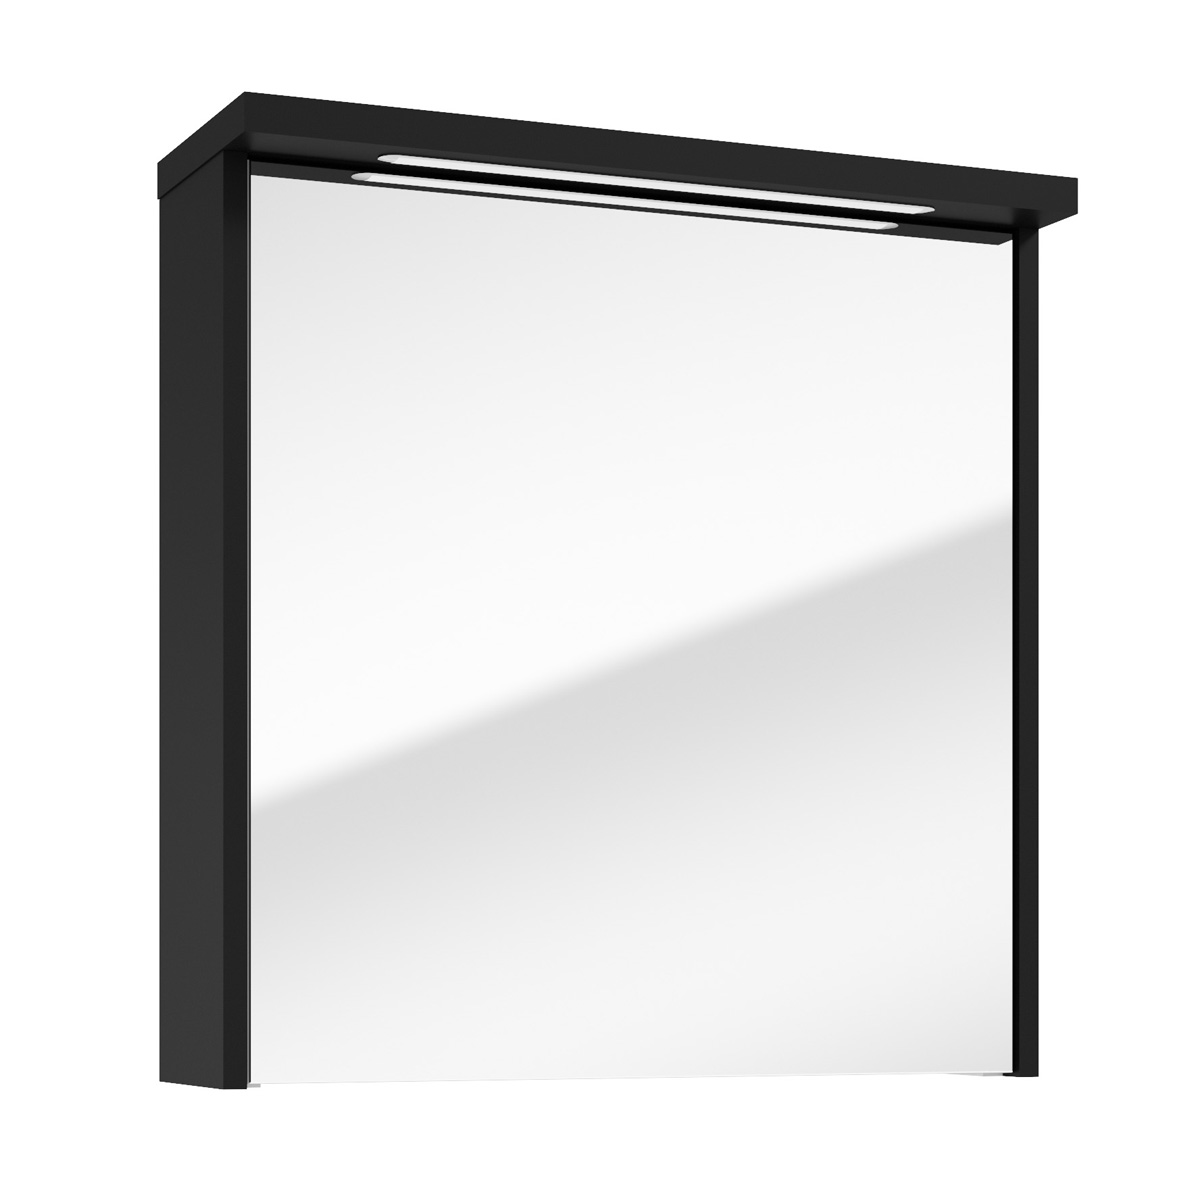 Fontana Grado spiegelkast met verlichting 60cm 1 deur zwart mat